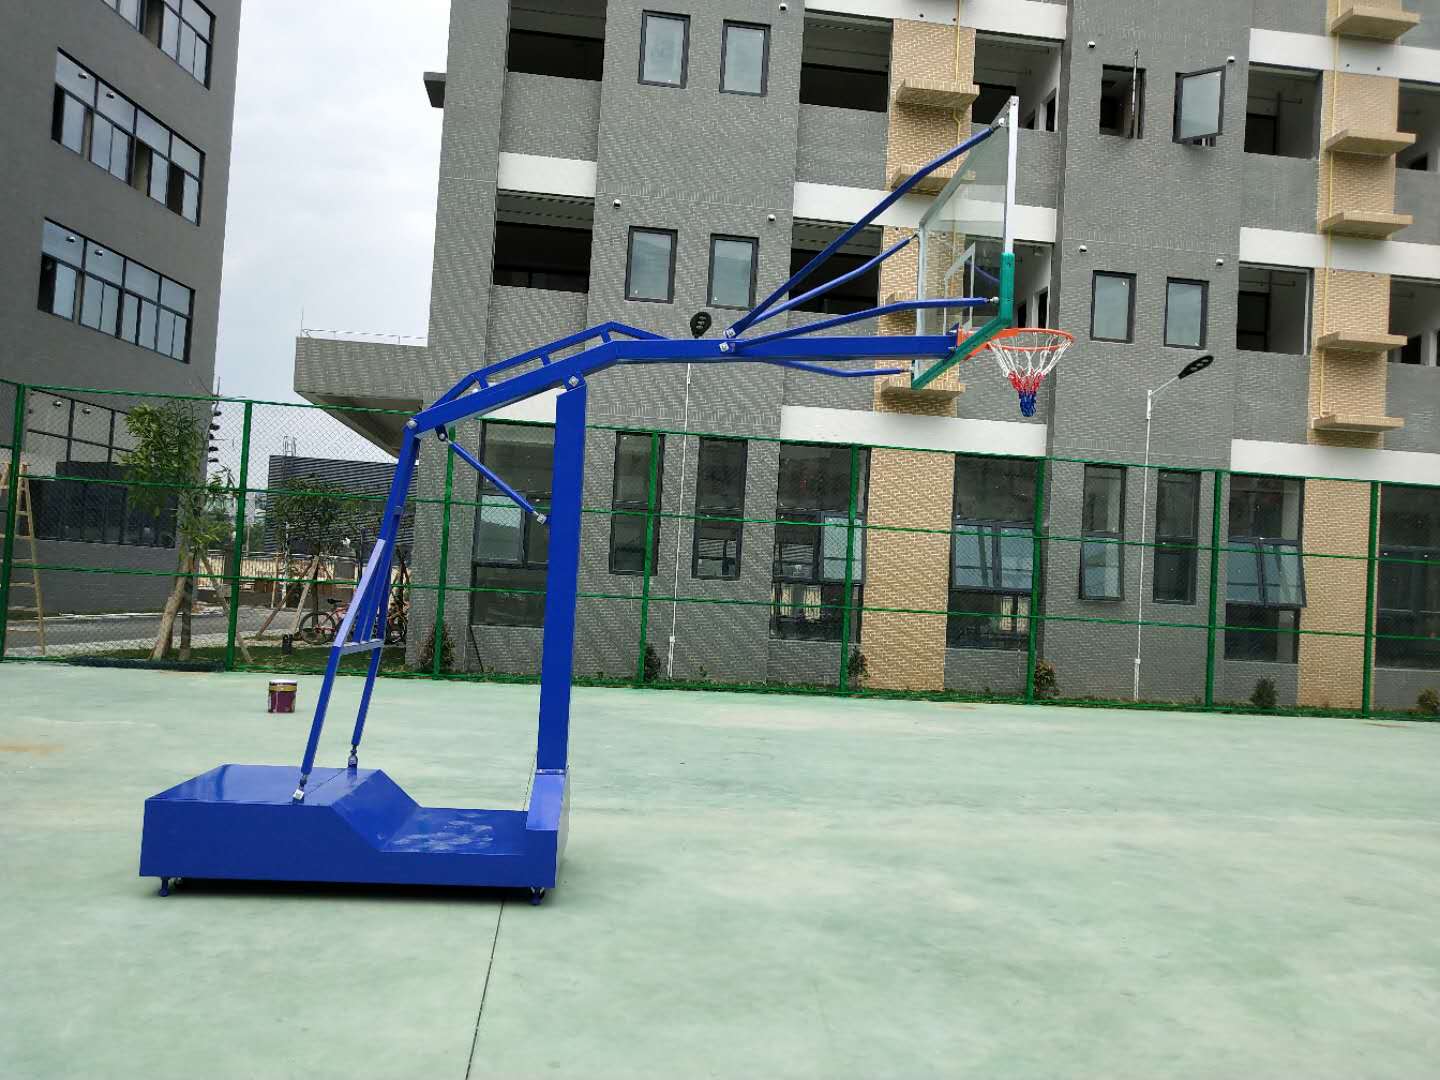 室外可移动篮球架学校小区用篮球架比赛用篮球架户外室外家用可移动比赛篮球架户外室外家用可移动标准比赛篮球架